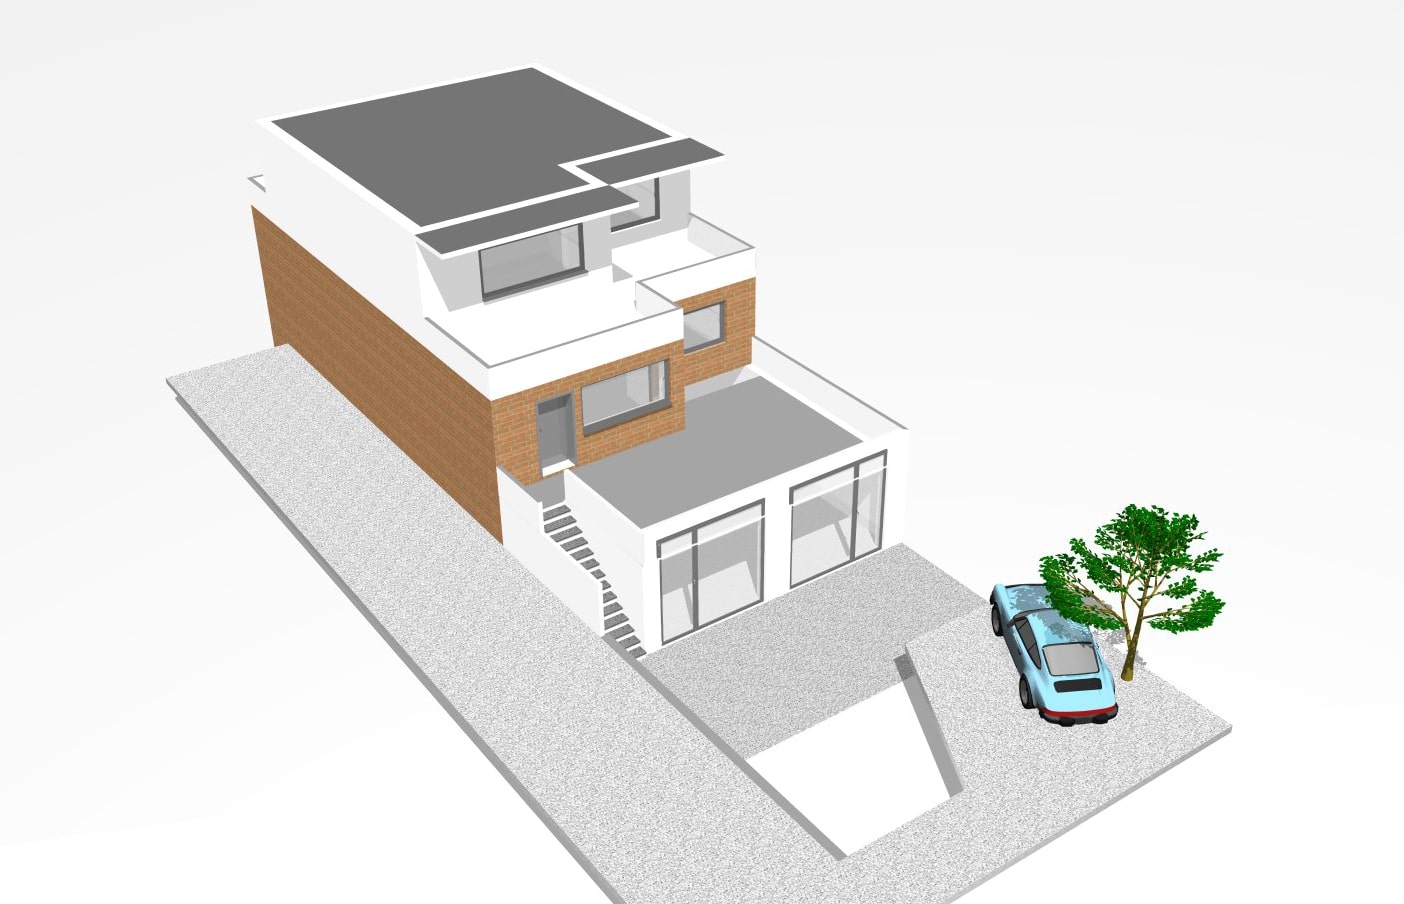 Profi-Visualisierung Modernisierung Immobillien · Architekt / Architekturbüro Schopow Köln Bonn, AKNW